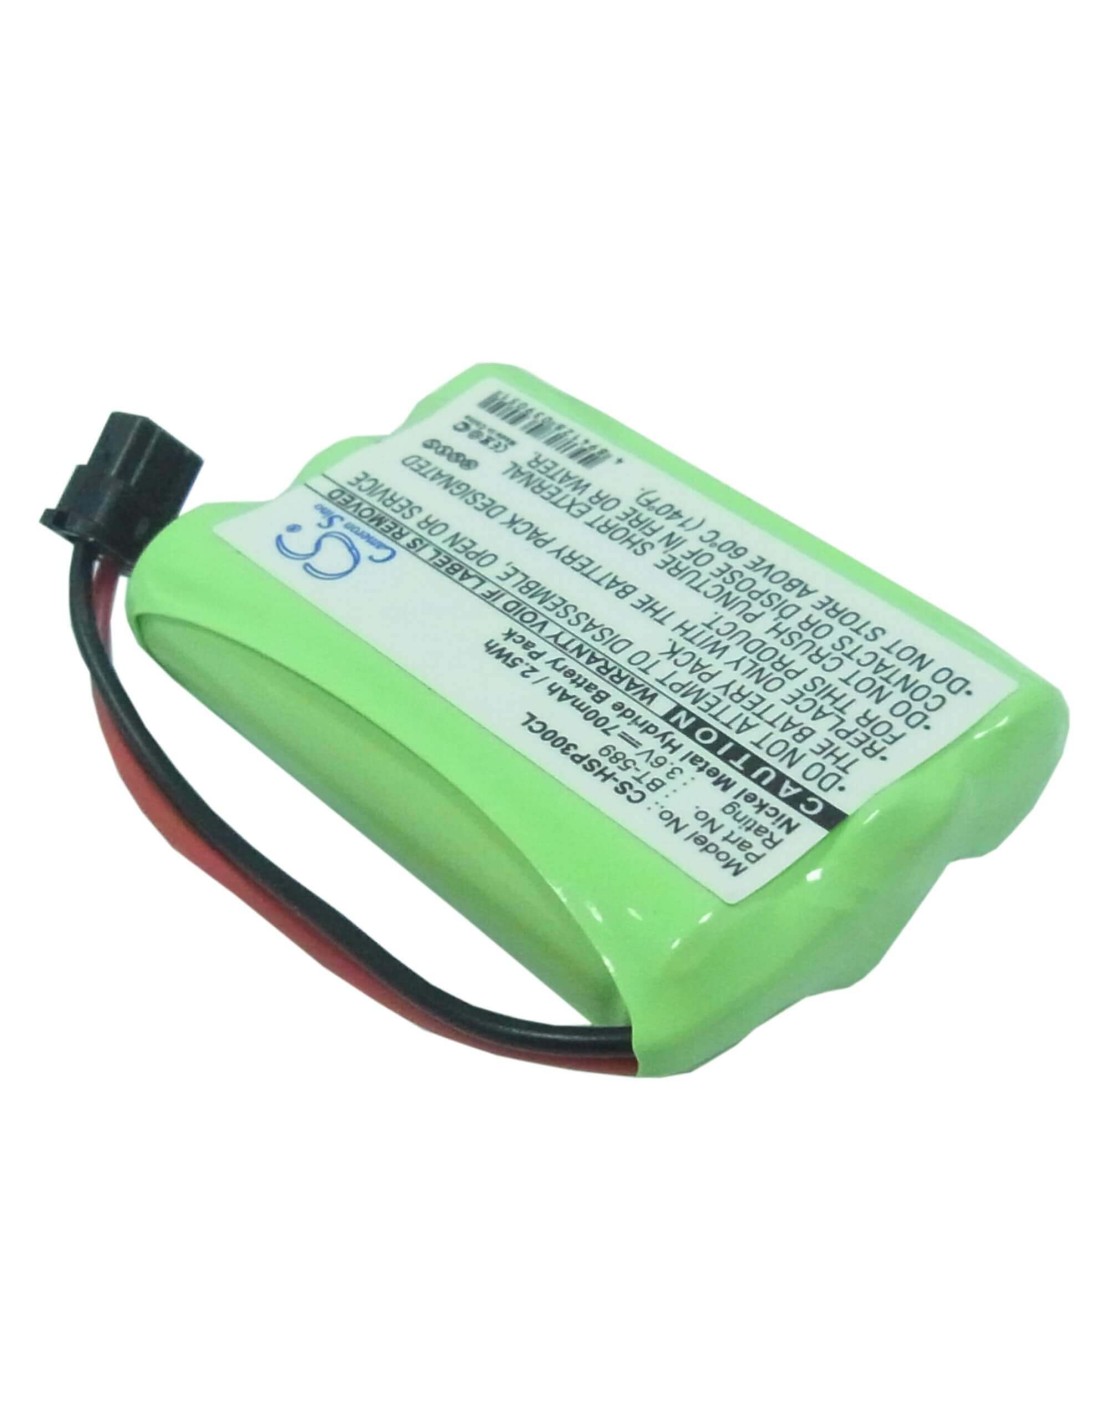 Battery for Hagenuk, Sl30080, Wp 300x 3.6V, 700mAh - 2.52Wh